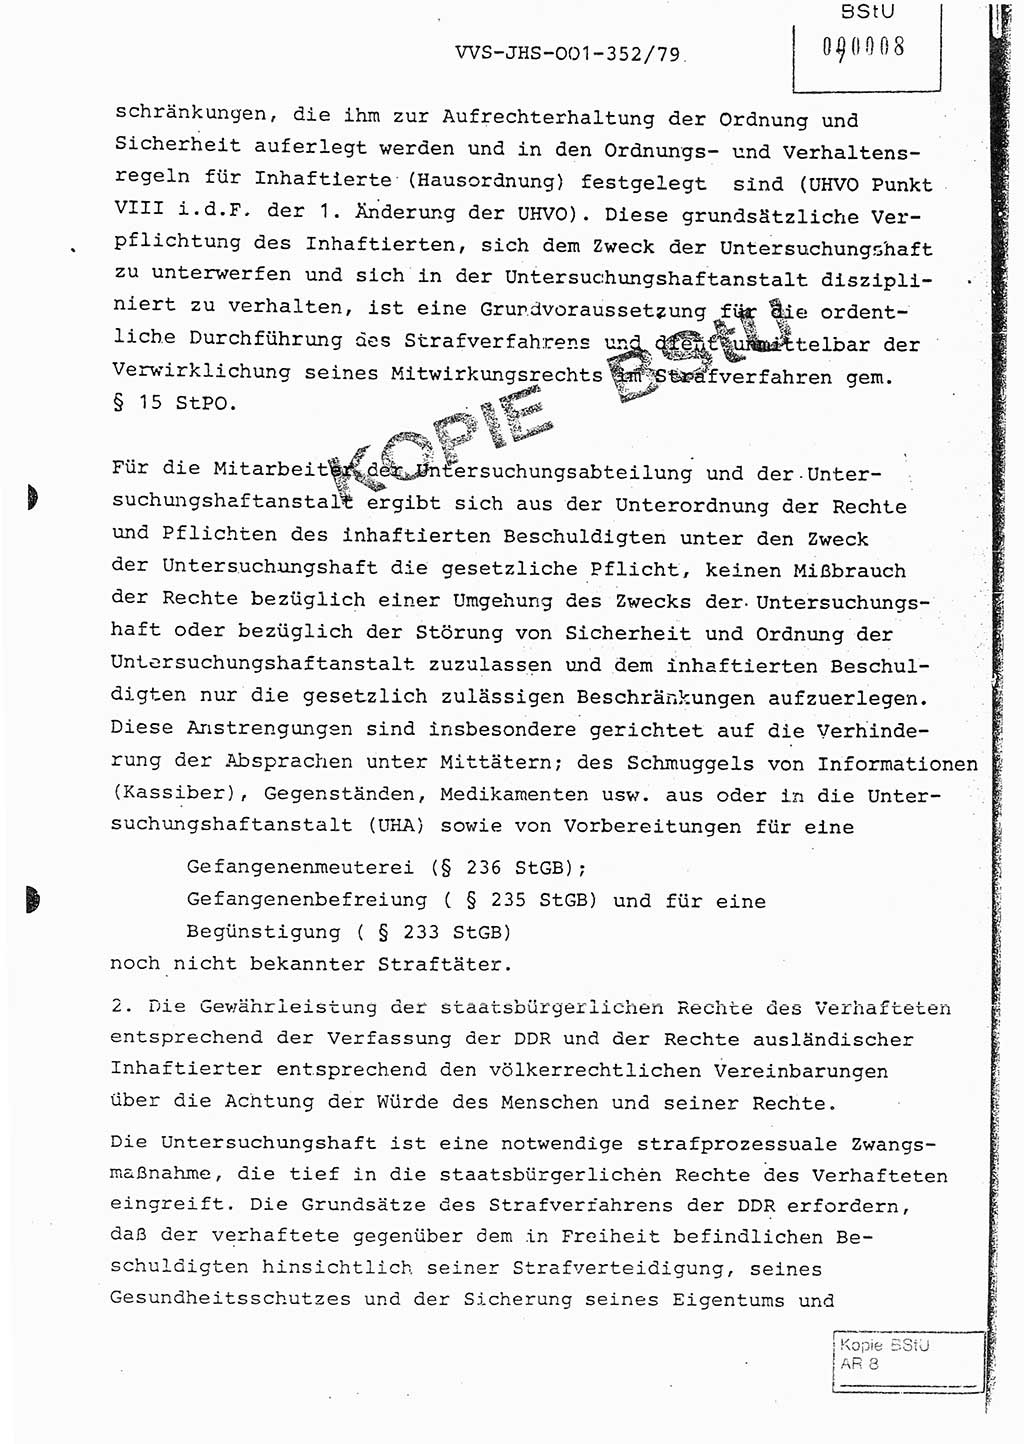 Diplomarbeit Hauptmann Peter Wittum (BV Bln. Abt. HA Ⅸ), Ministerium für Staatssicherheit (MfS) [Deutsche Demokratische Republik (DDR)], Juristische Hochschule (JHS), Vertrauliche Verschlußsache (VVS) o001-352/79, Potsdam 1979, Seite 7 (Dipl.-Arb. MfS DDR JHS VVS o001-352/79 1979, S. 7)